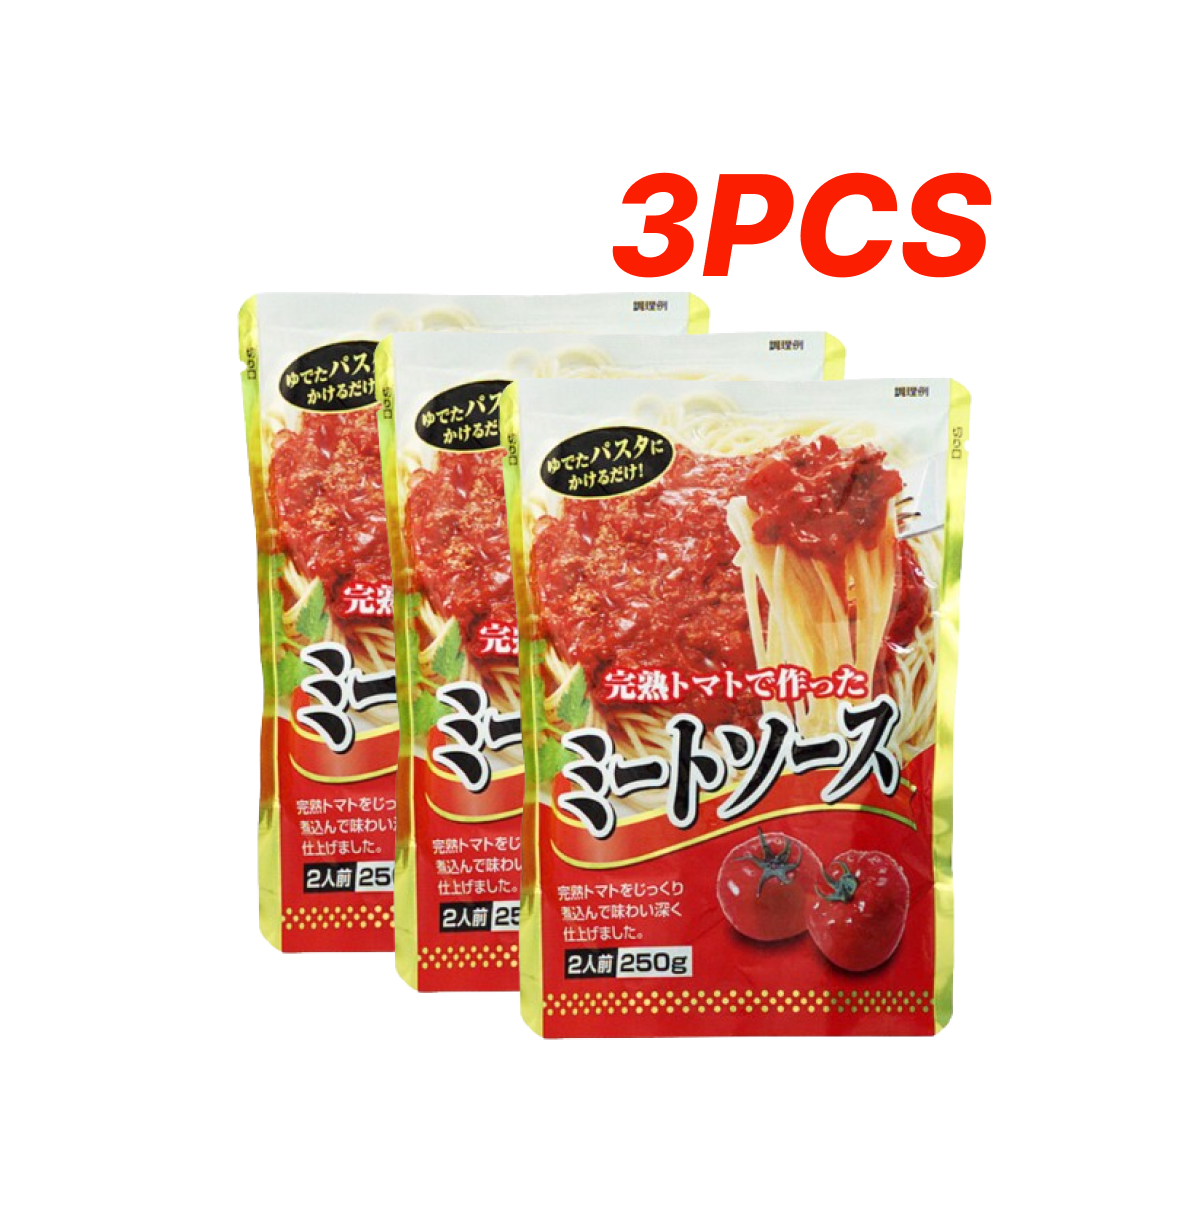 KOUSYO 3件裝 肉醬意粉醬 250g/件